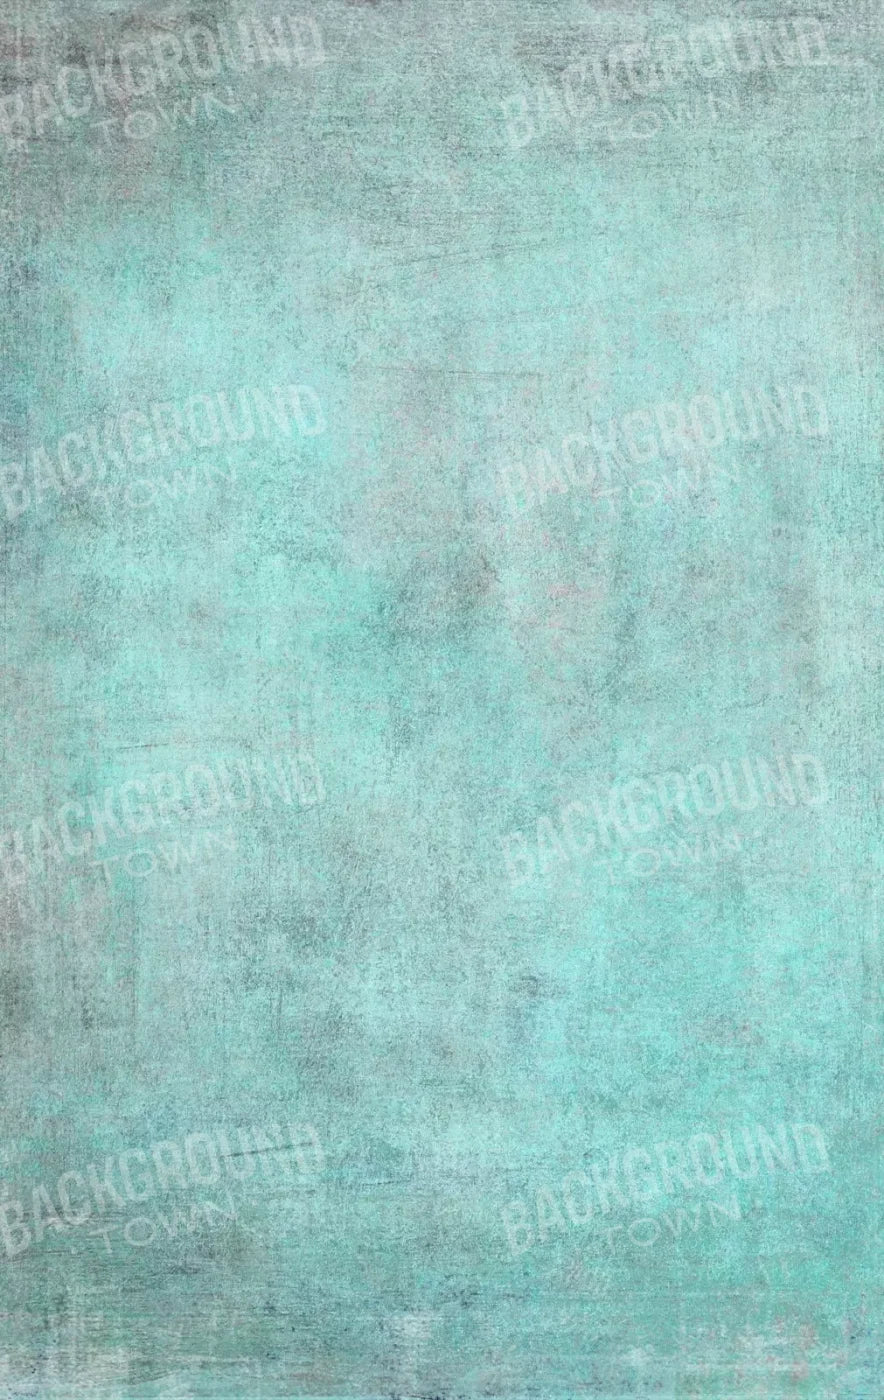 Grunge Seafoam 10X16 Ultracloth ( 120 X 192 Inch ) Backdrop